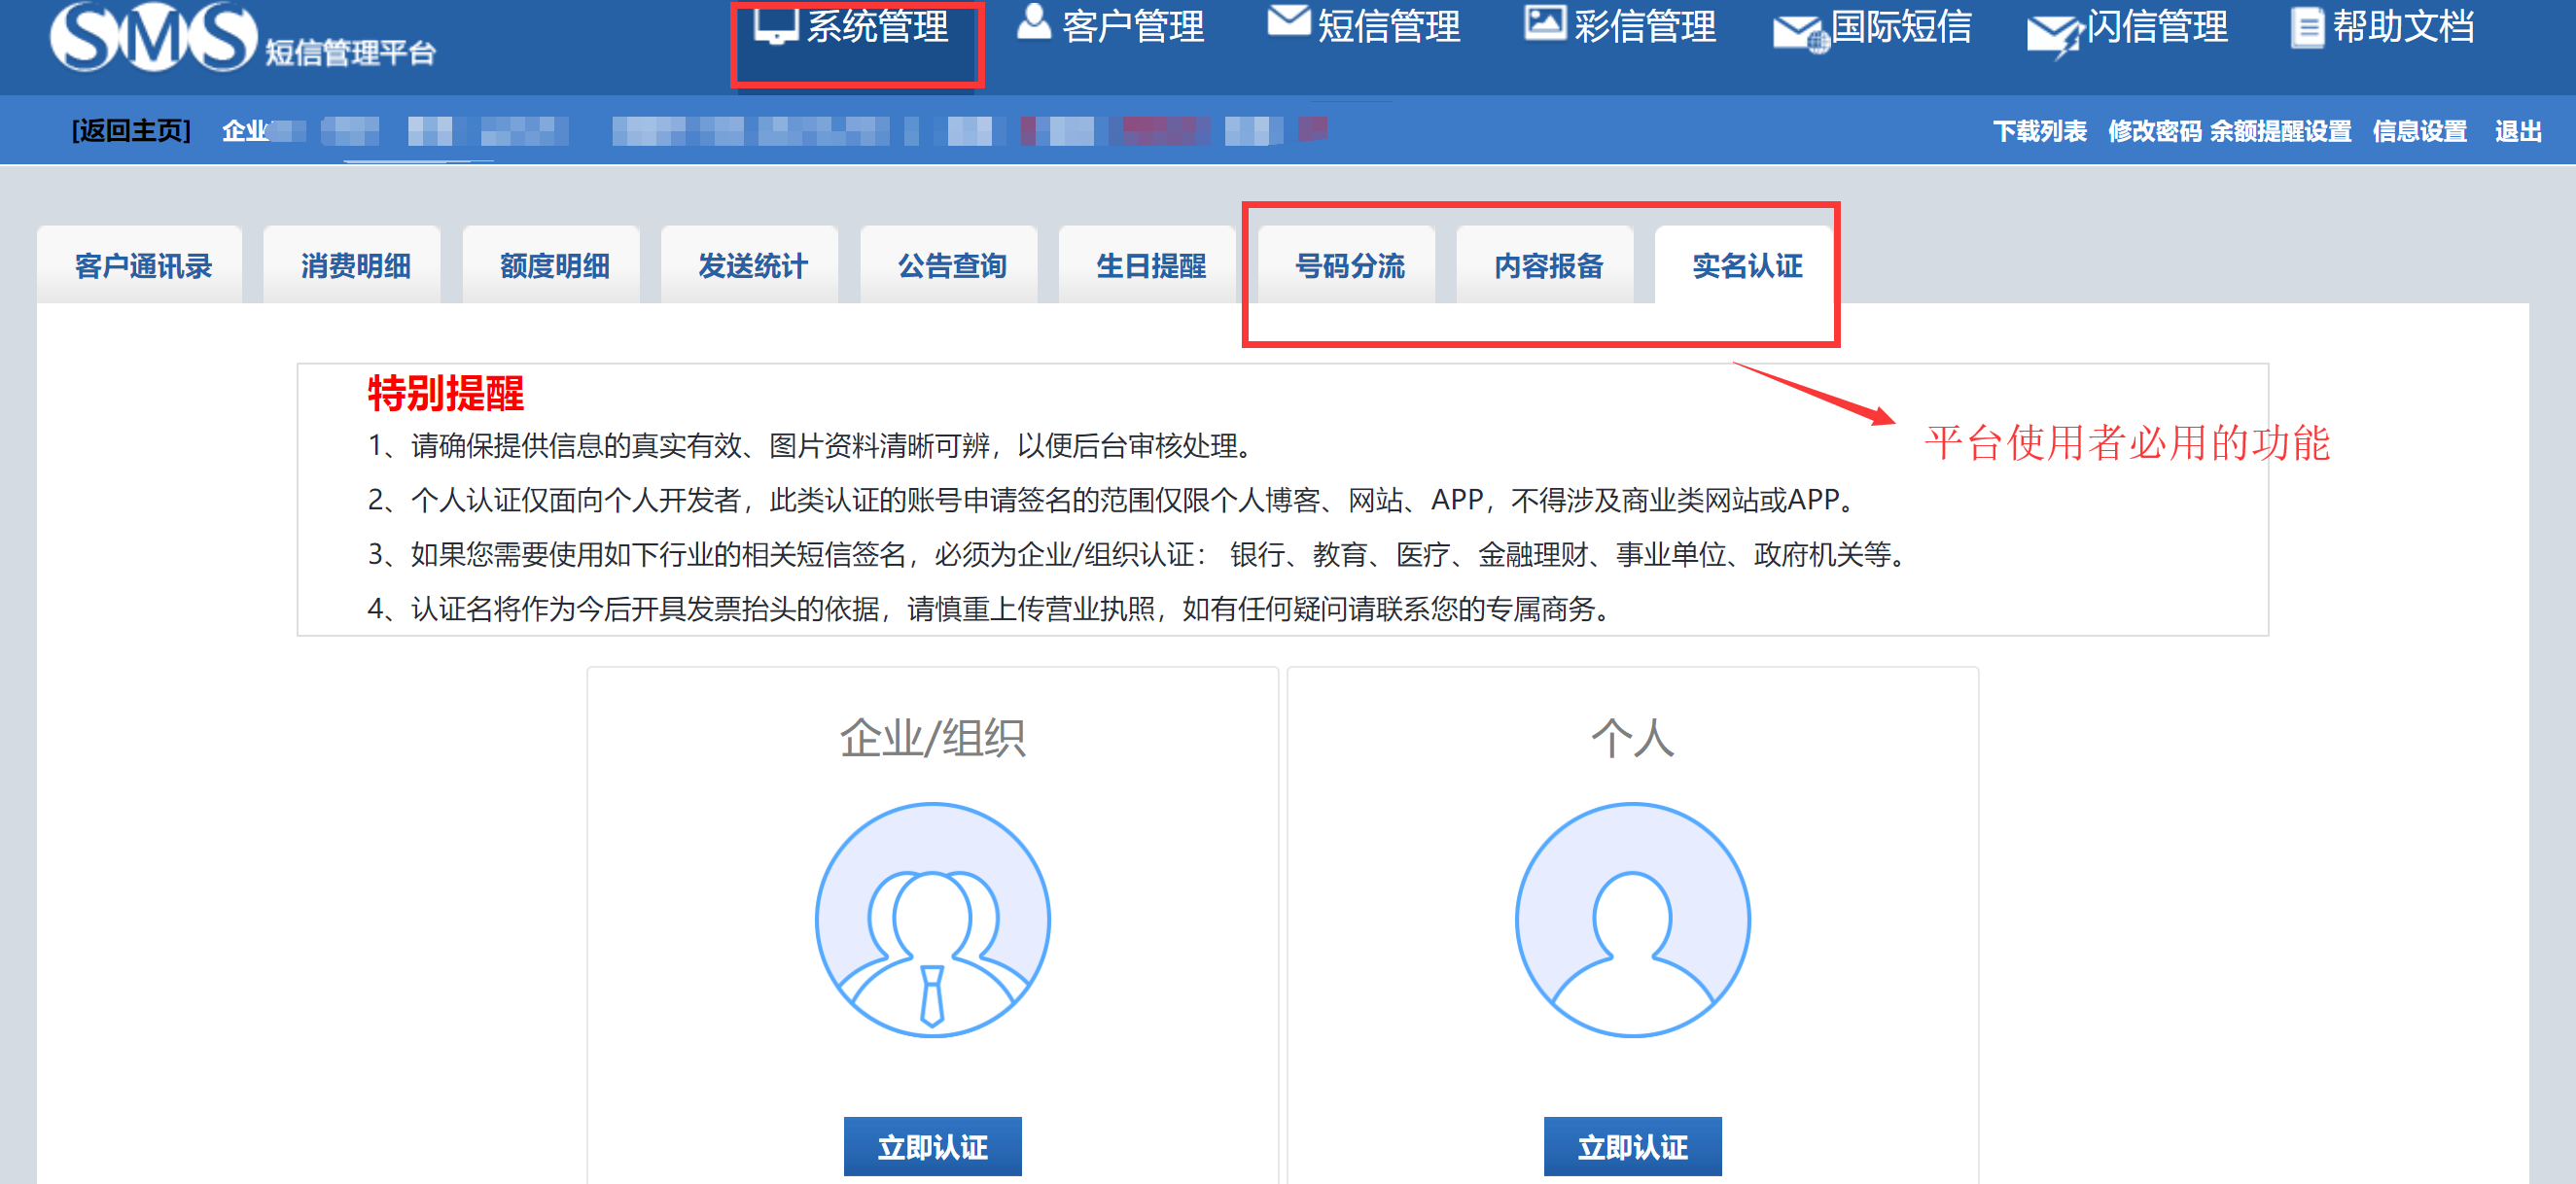 bwin·必赢(中国)唯一官方网站_项目5138